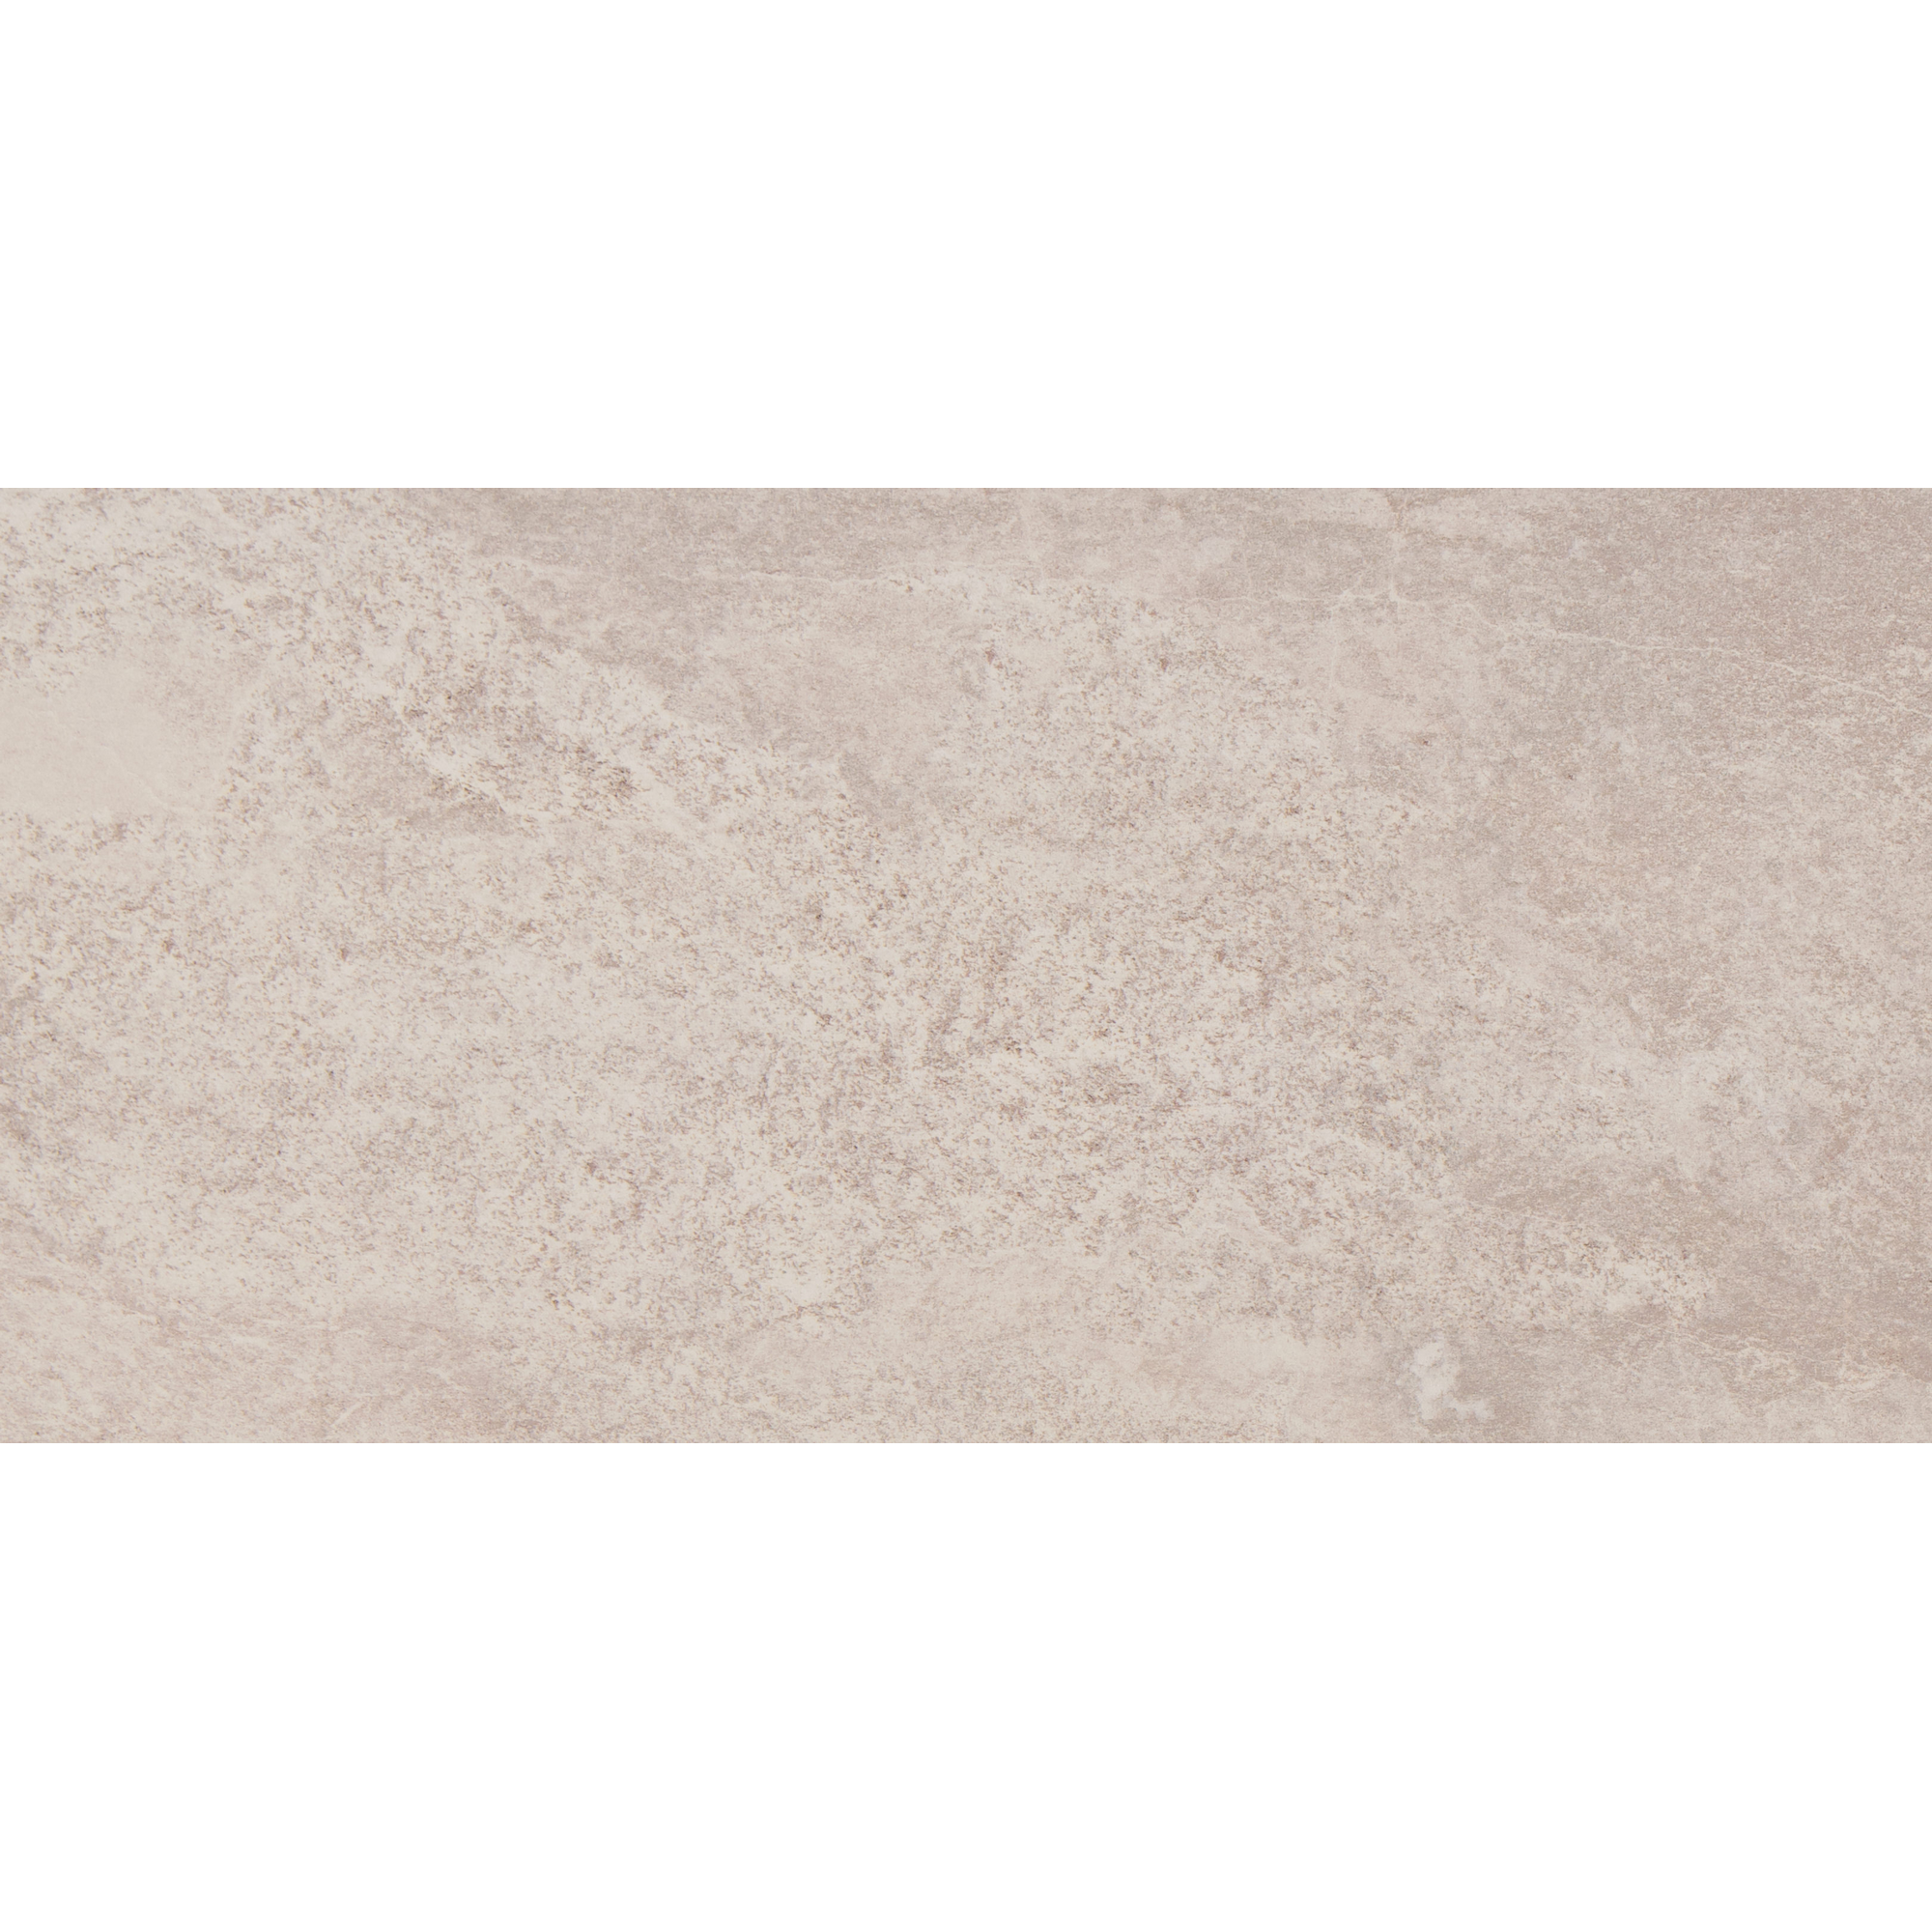 Bodenfliese 'Tempio' Feinsteinzeug beige 30,2 x 60,4 cm + product picture